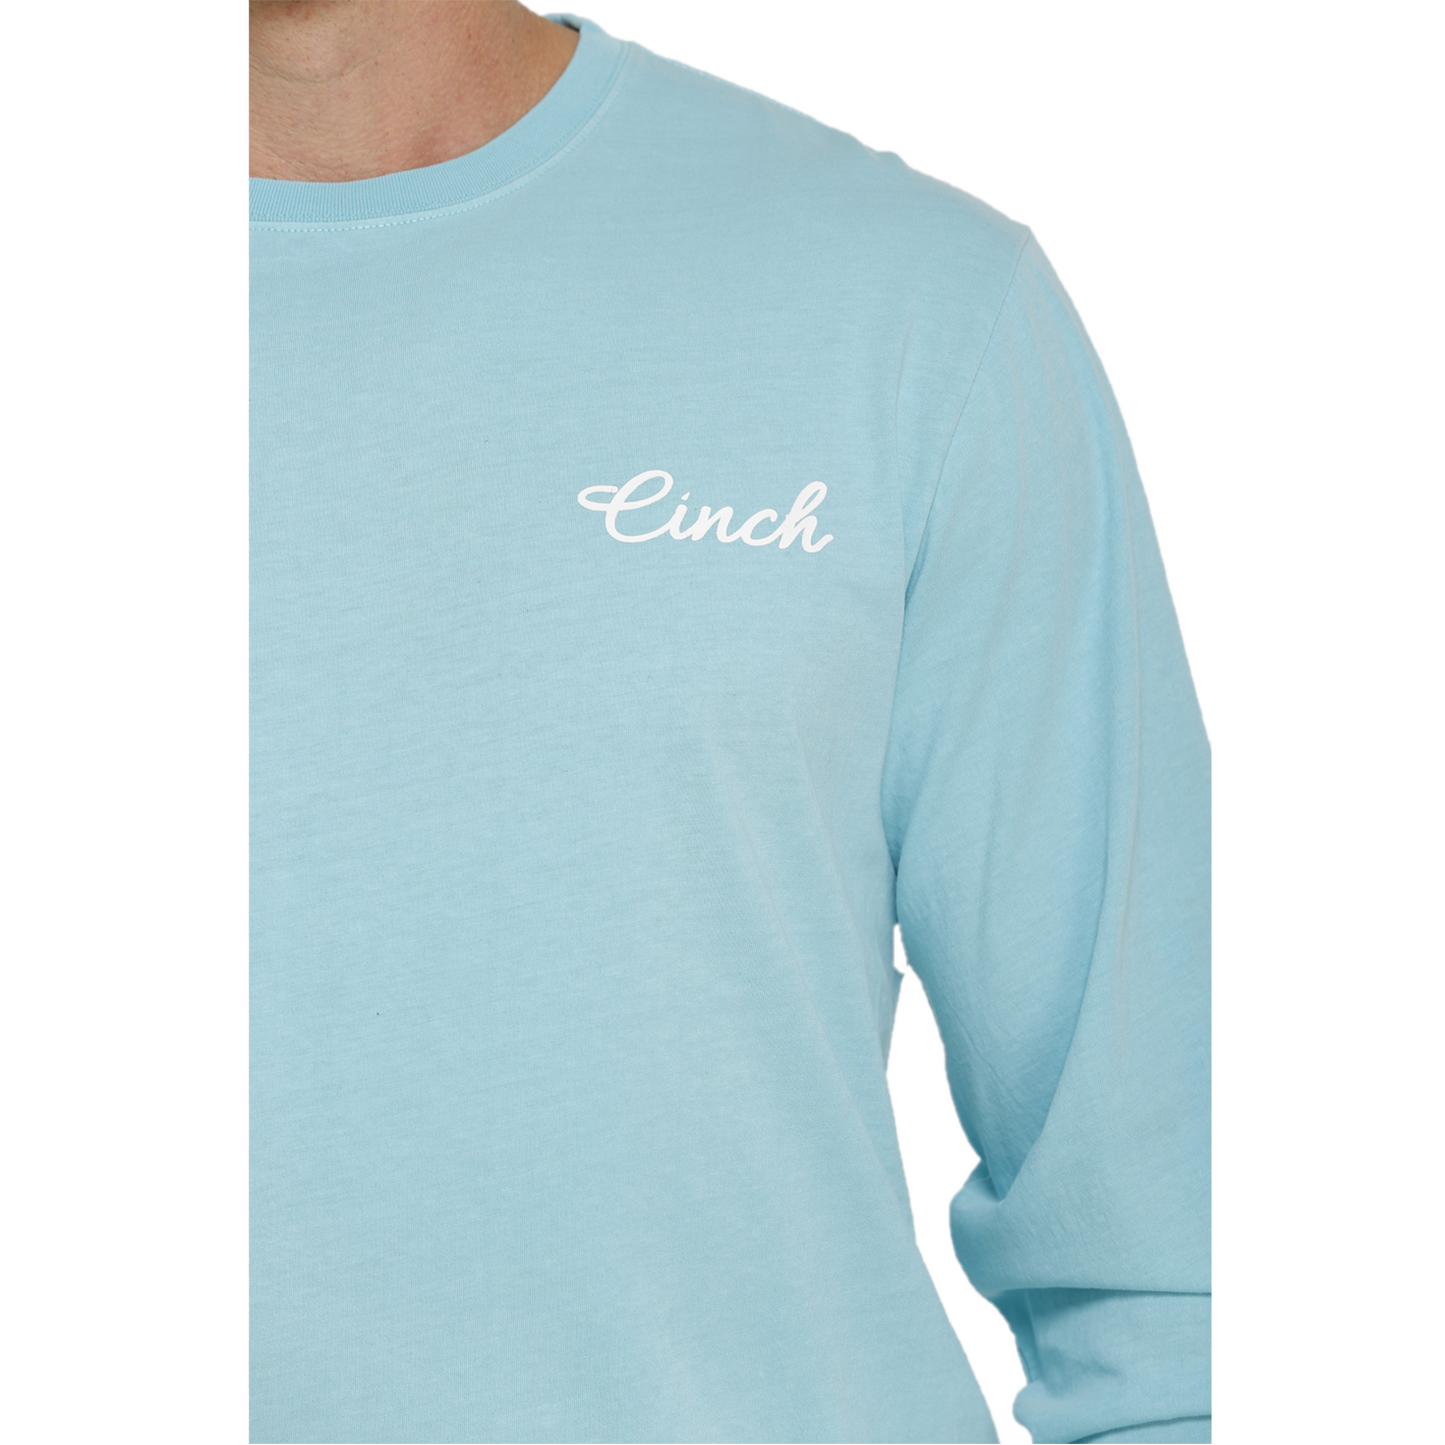 Men's Cinch Light Blue Graphic Tee Shirt